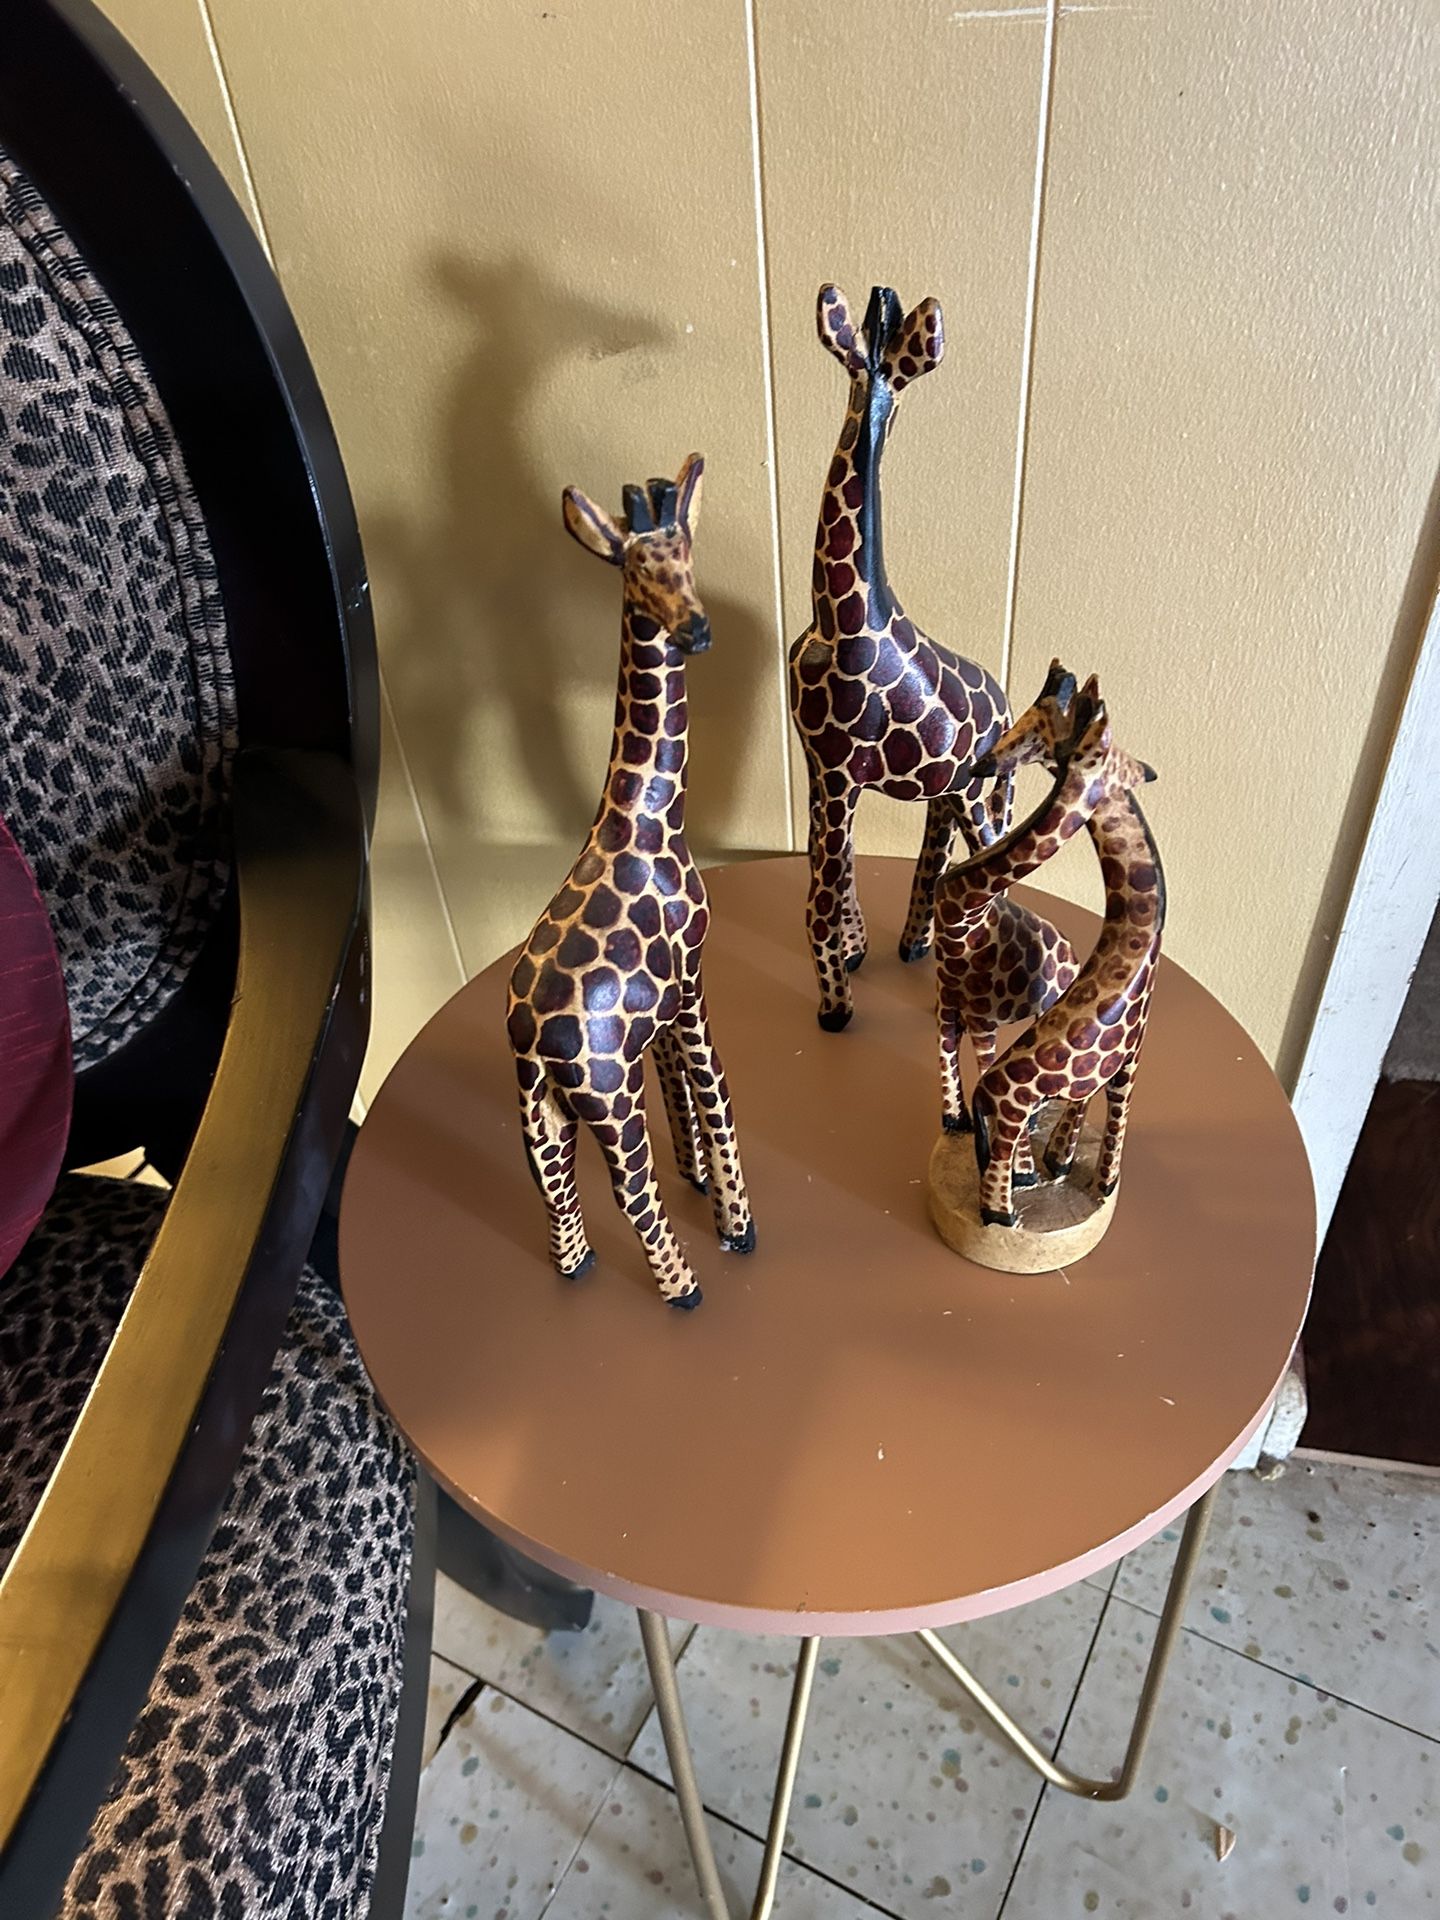 3 Giraffes 